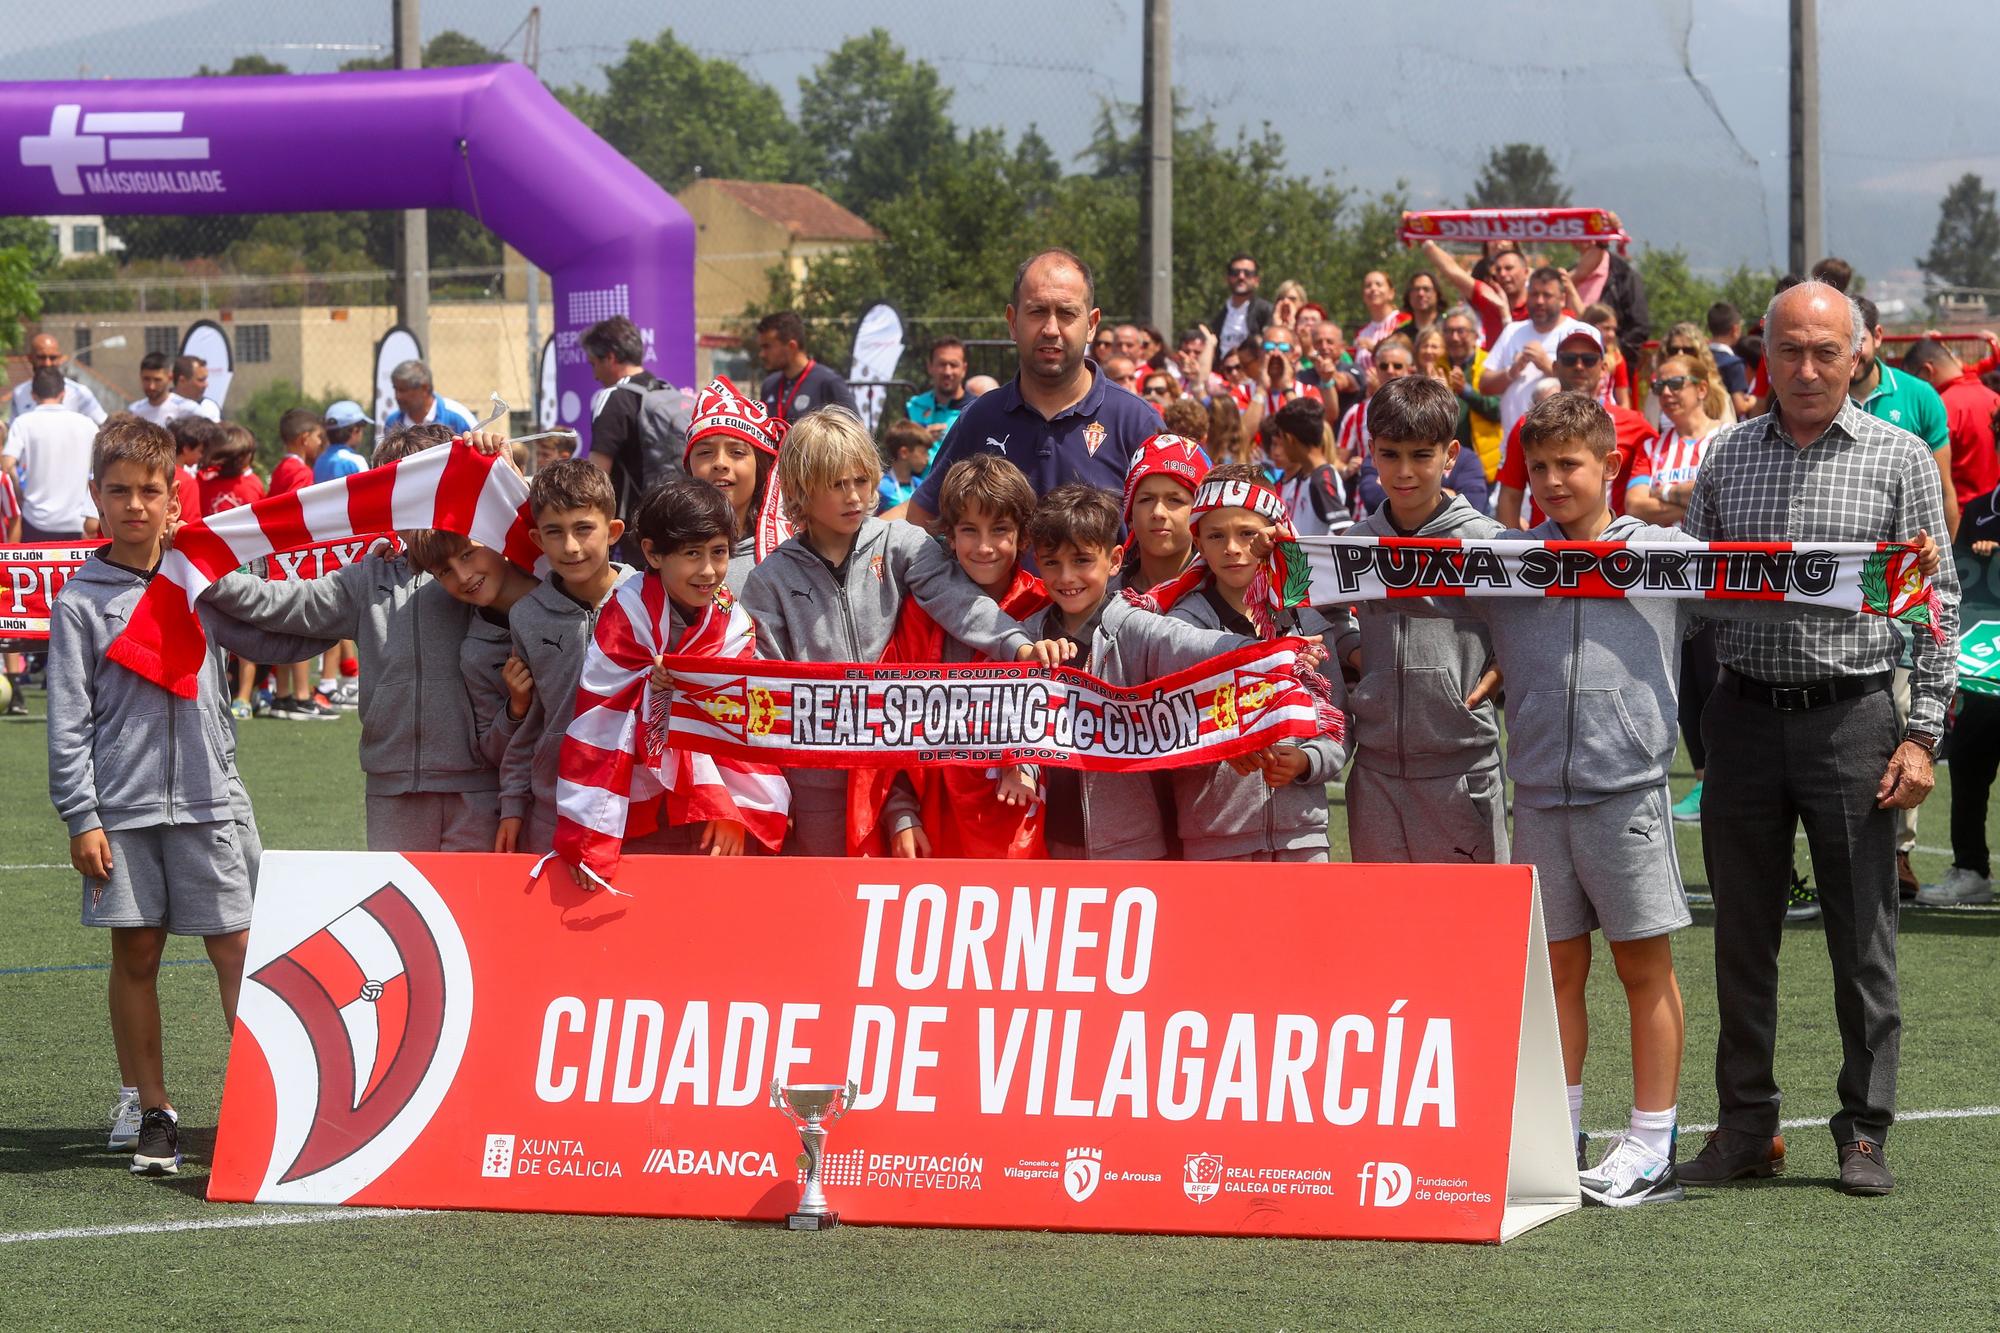 El Real Madrid suma a sus vitrinas el Torneo Cidade de Vilagarcía